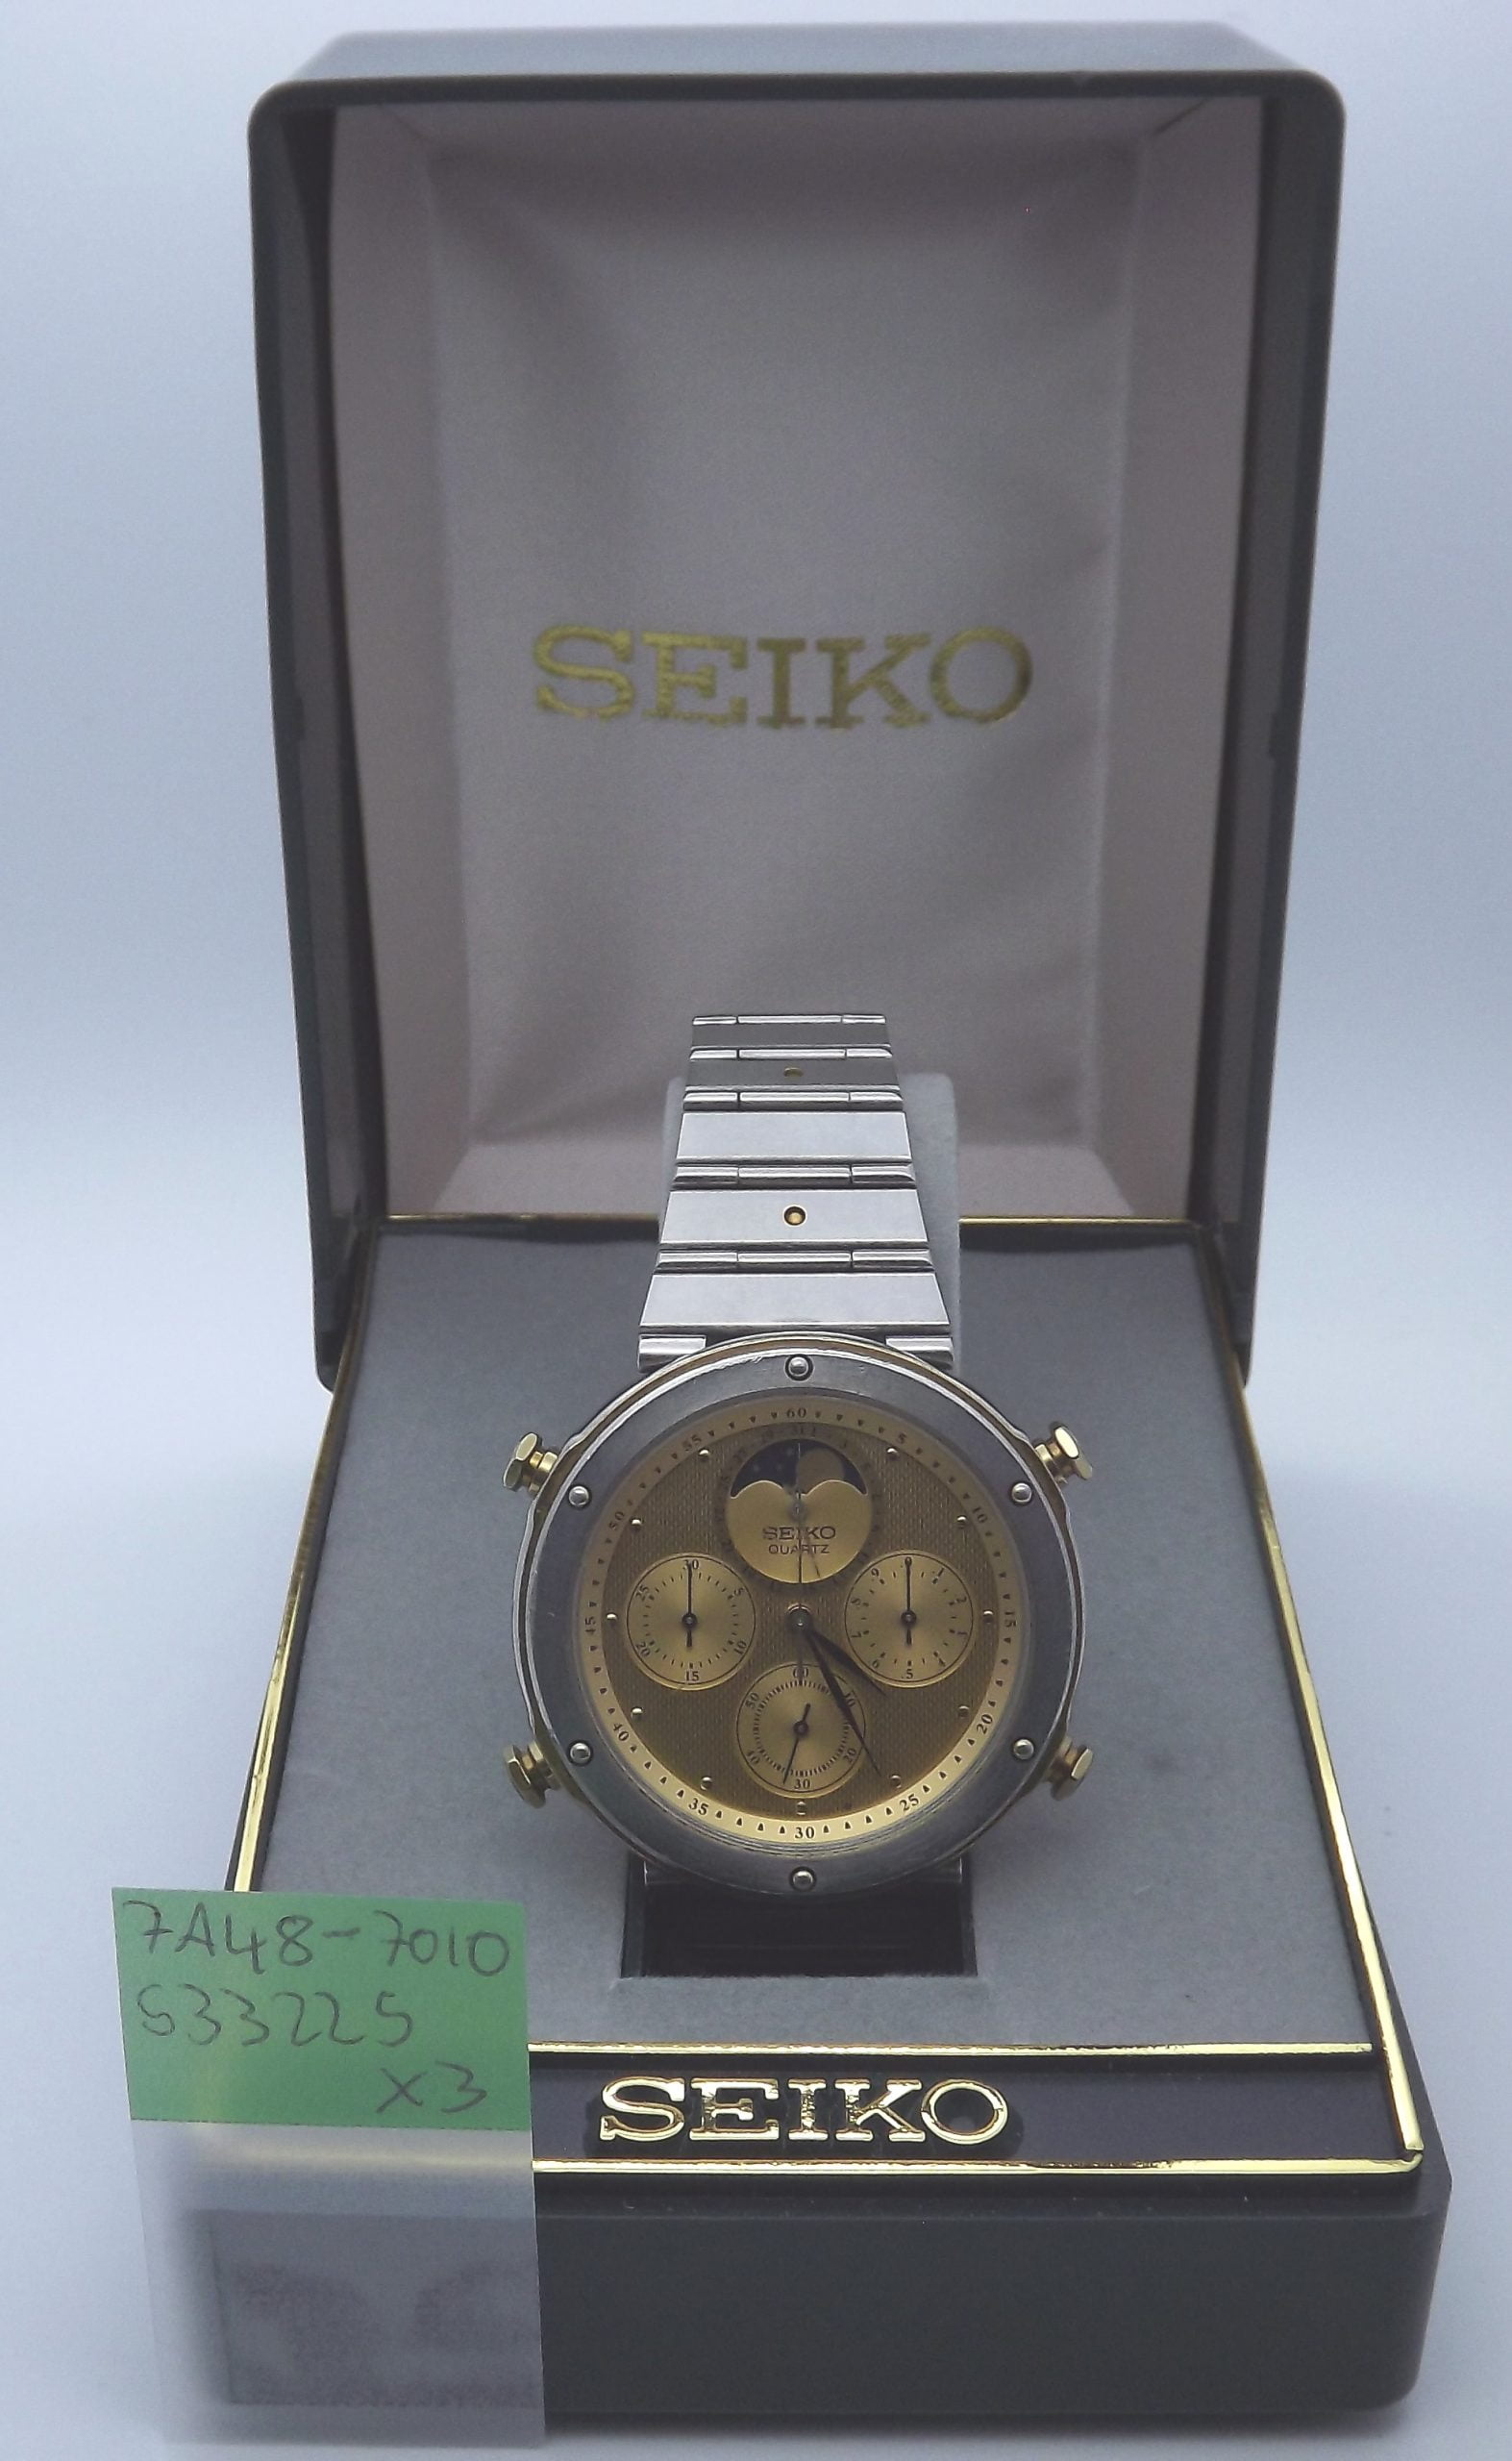 7A48-7010 – Seiko Works